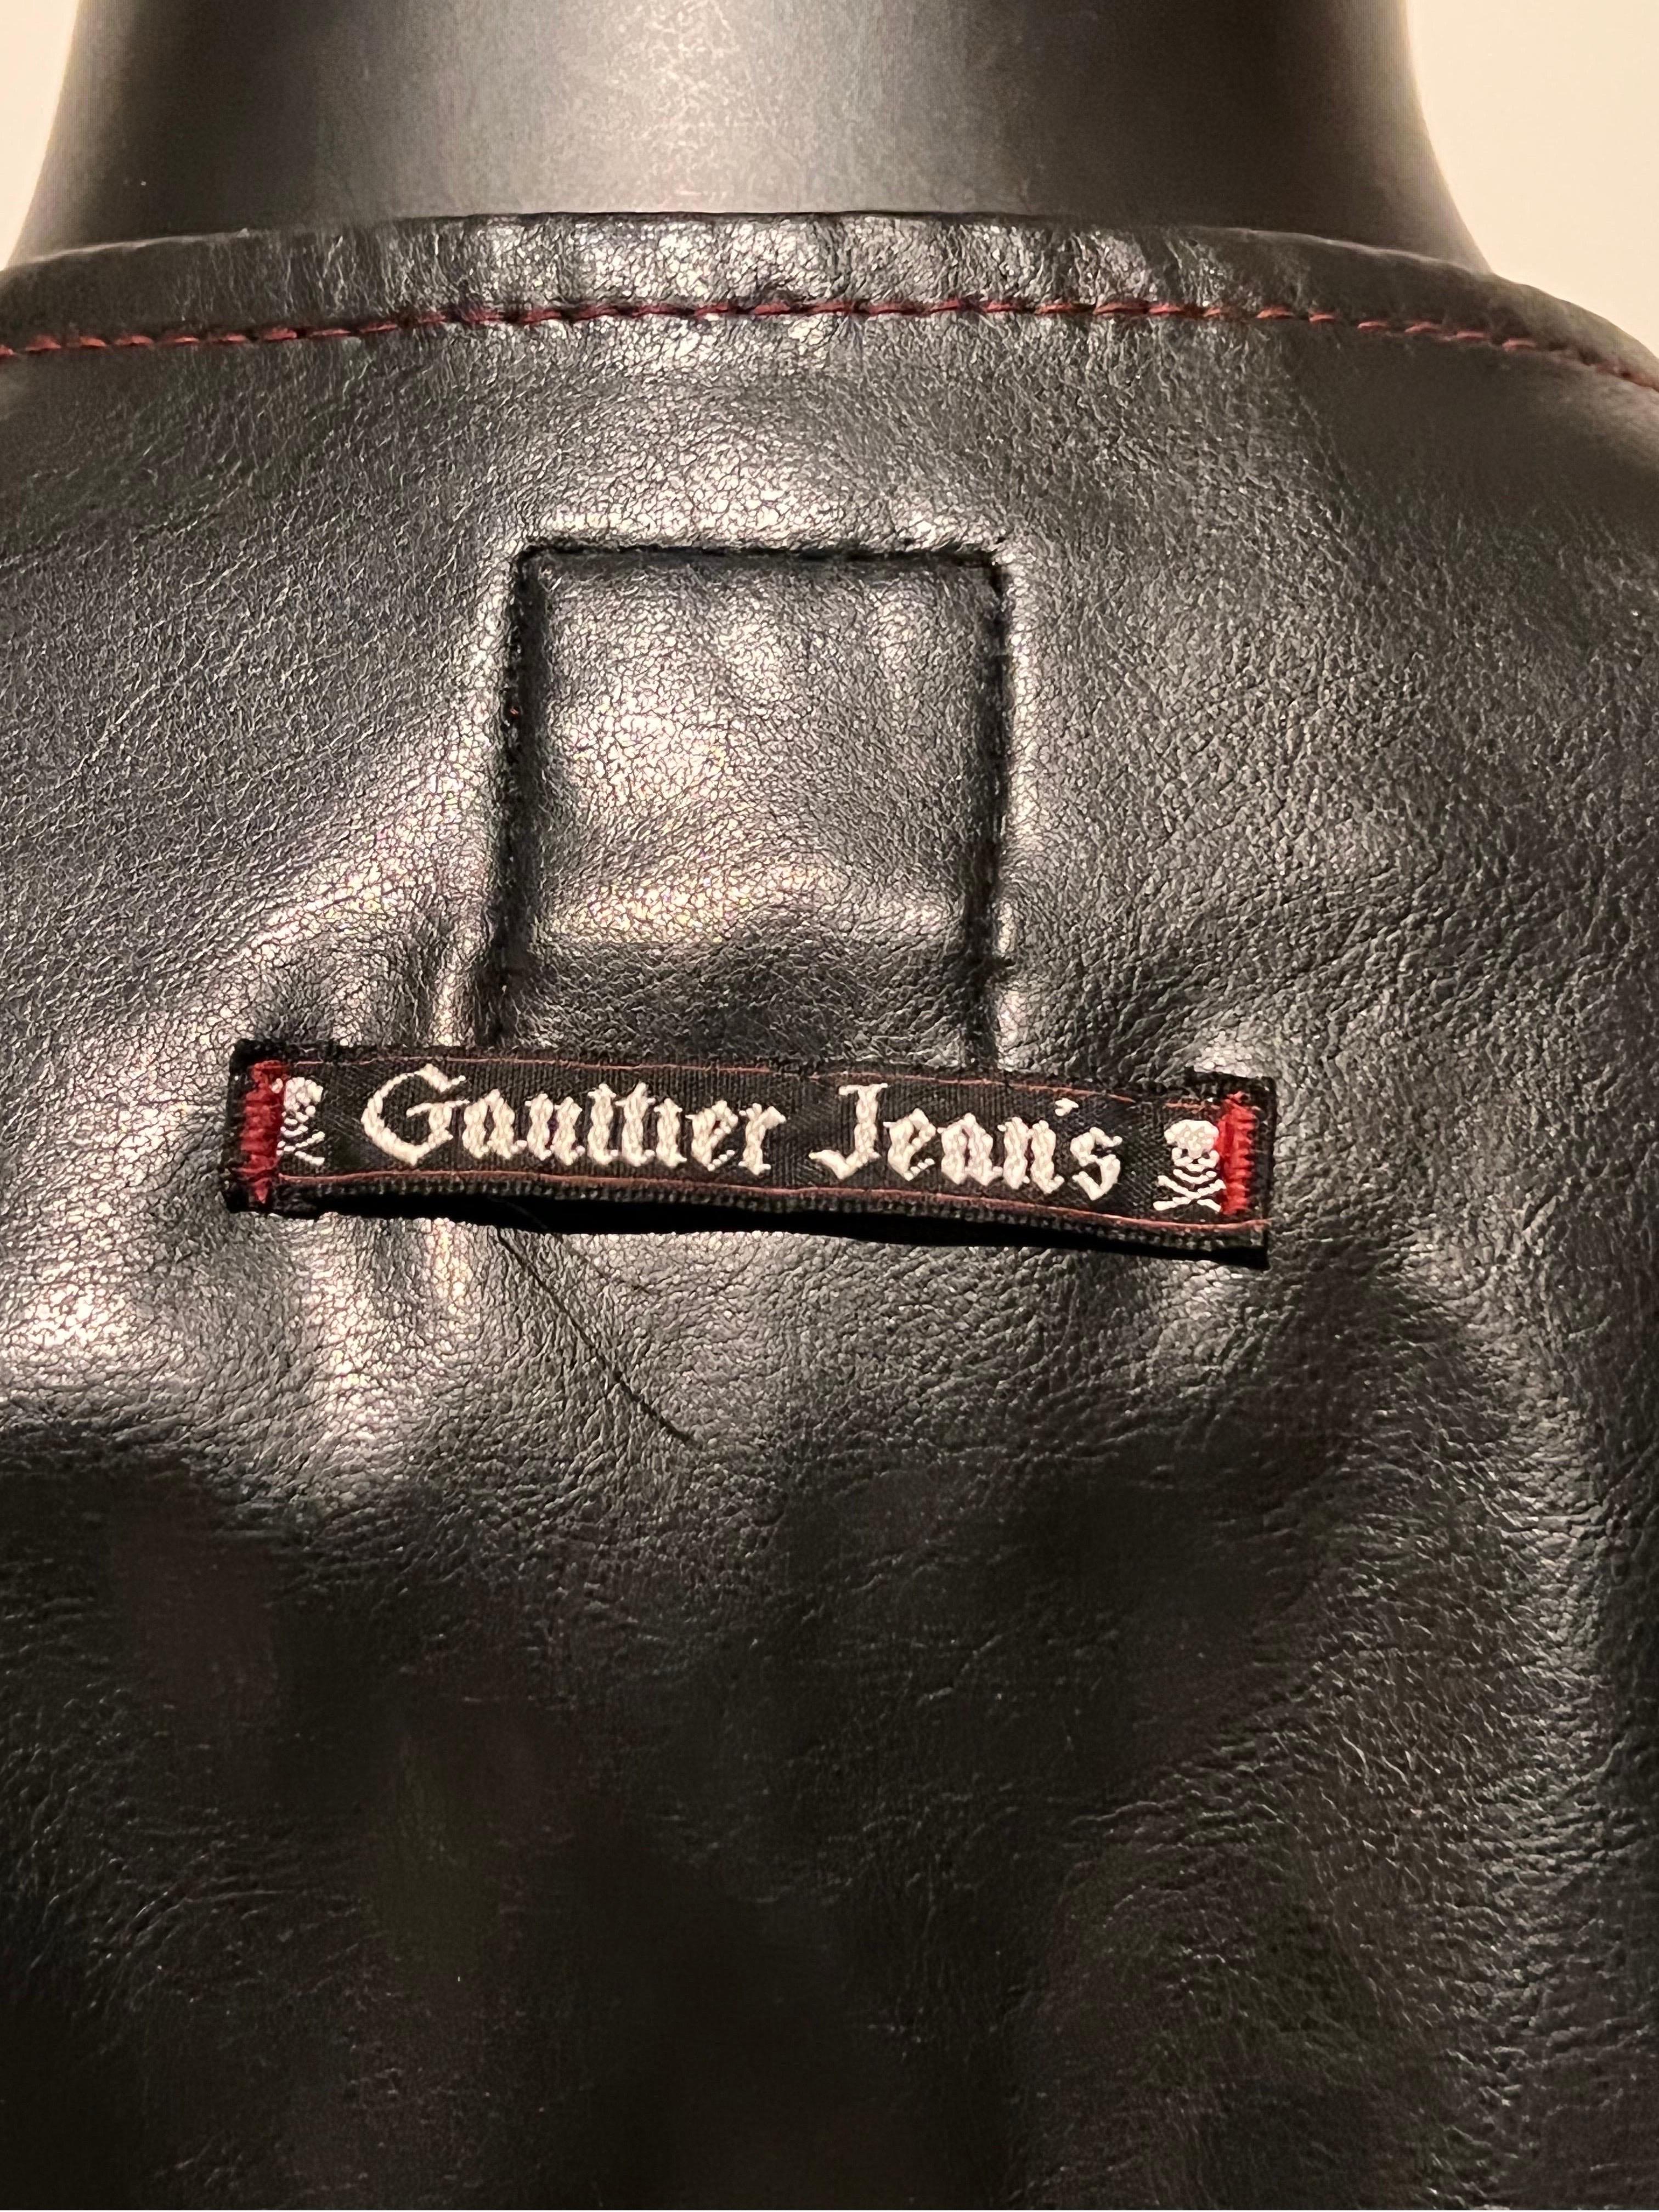 Jean Paul GAULTIER JEANS vinyl fringed ‘Cowboy Jeans & Vest’ ensemble  For Sale 6